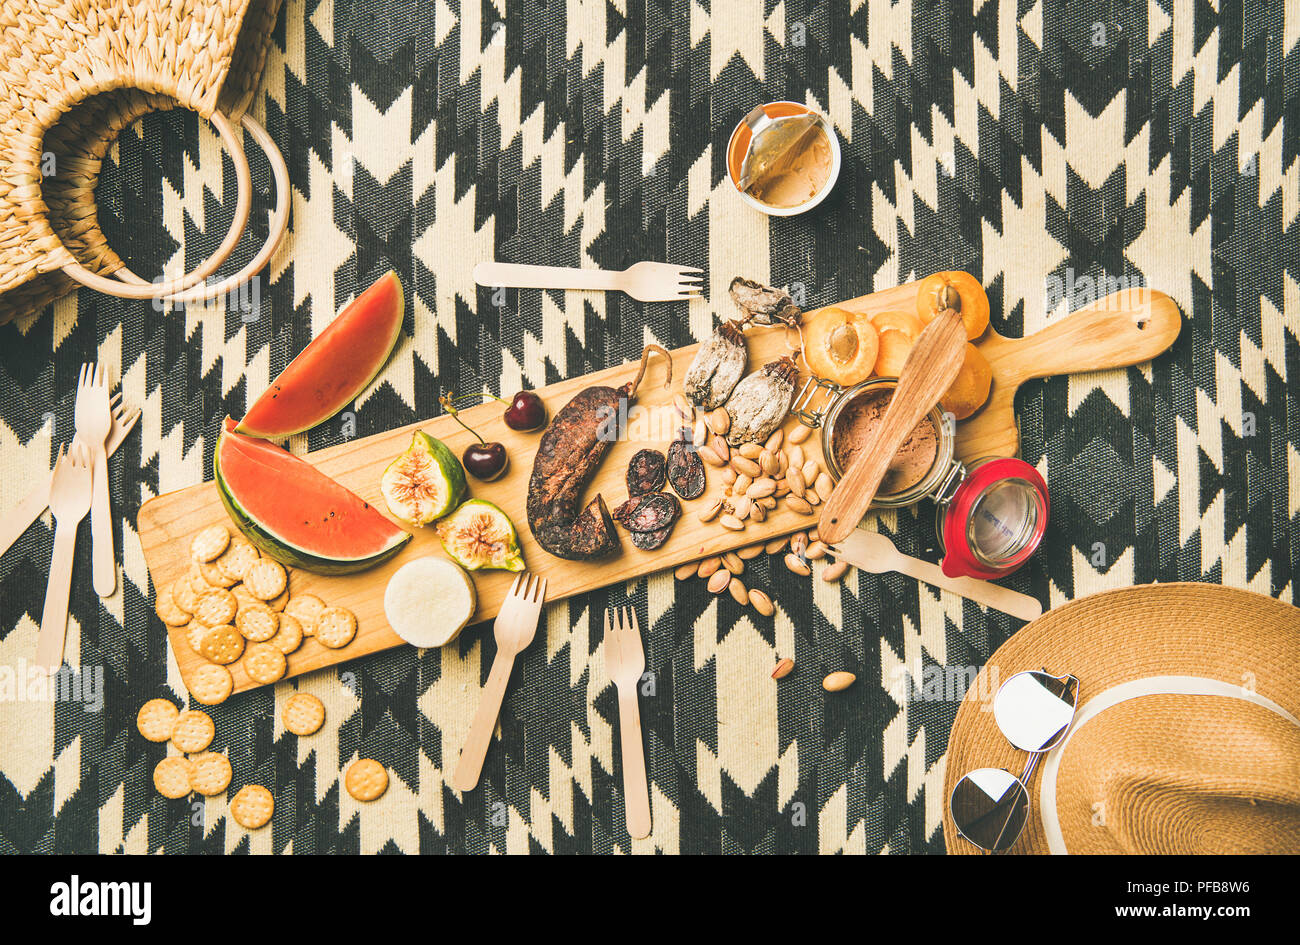 Picknick Konzept mit Wurst, Obst, Nüsse, Käse und Pastete Stockfoto